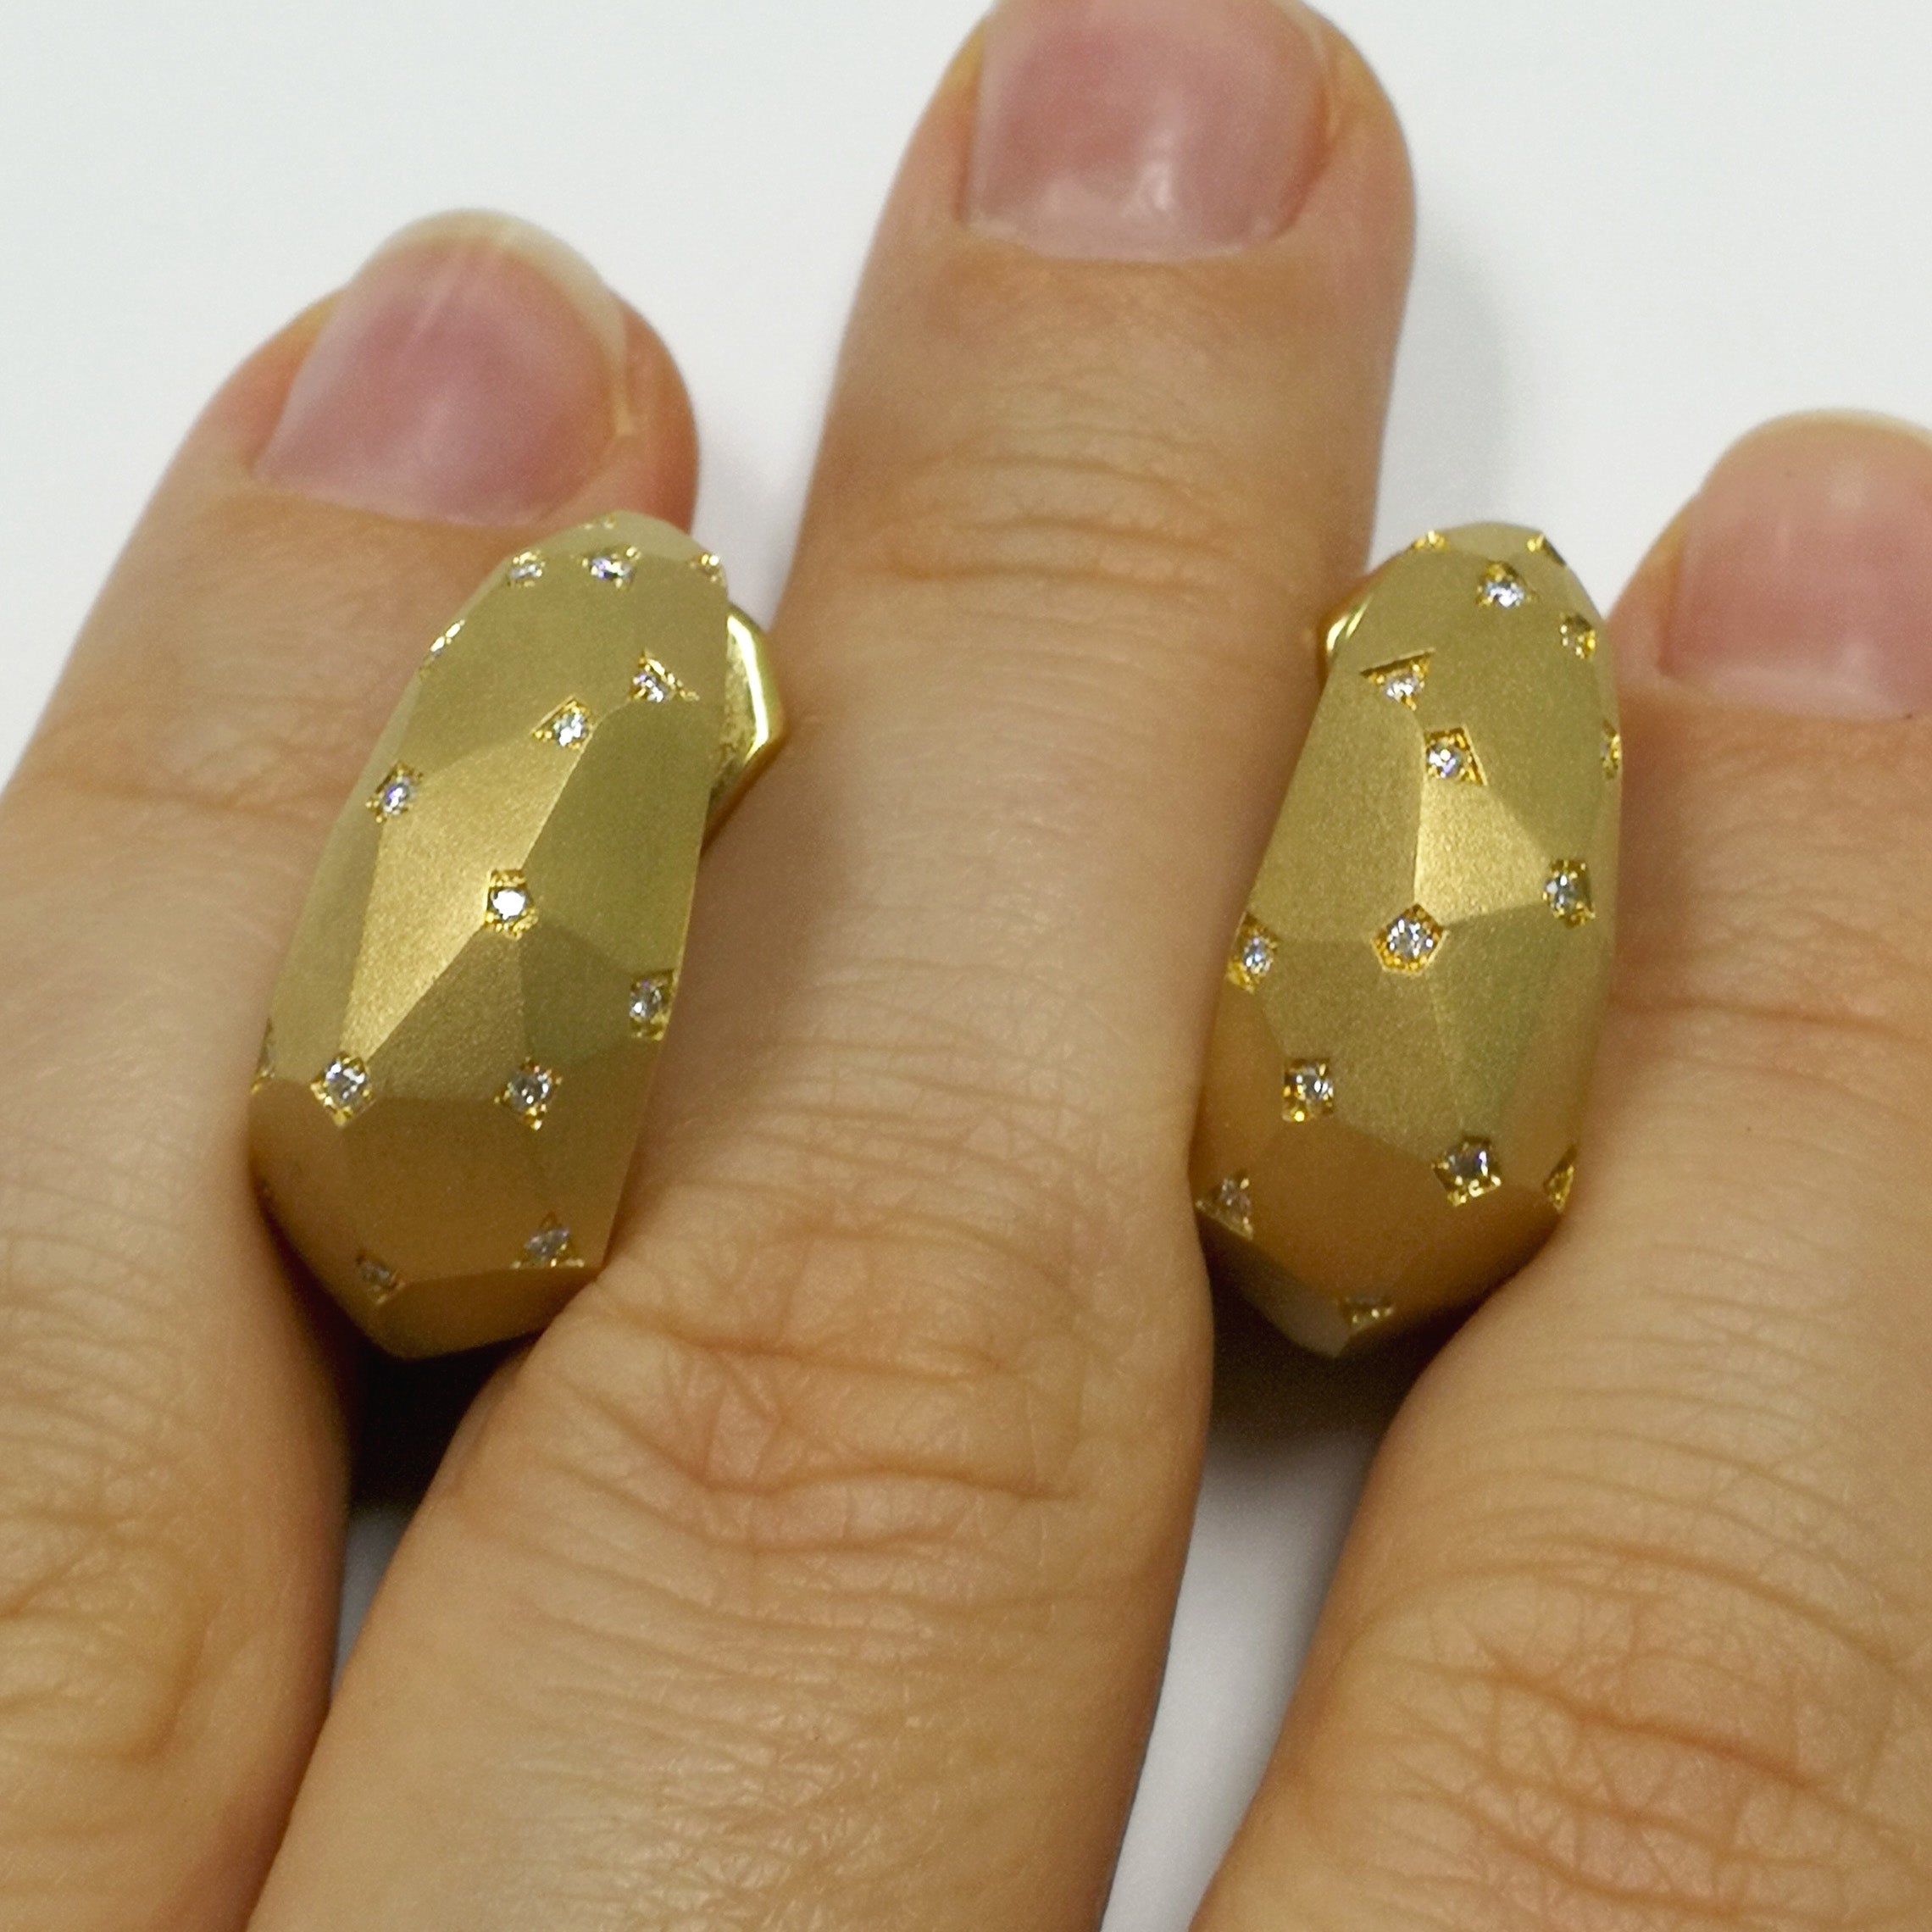 E 0190-7, 18K Yellow Gold, Diamonds Earrings